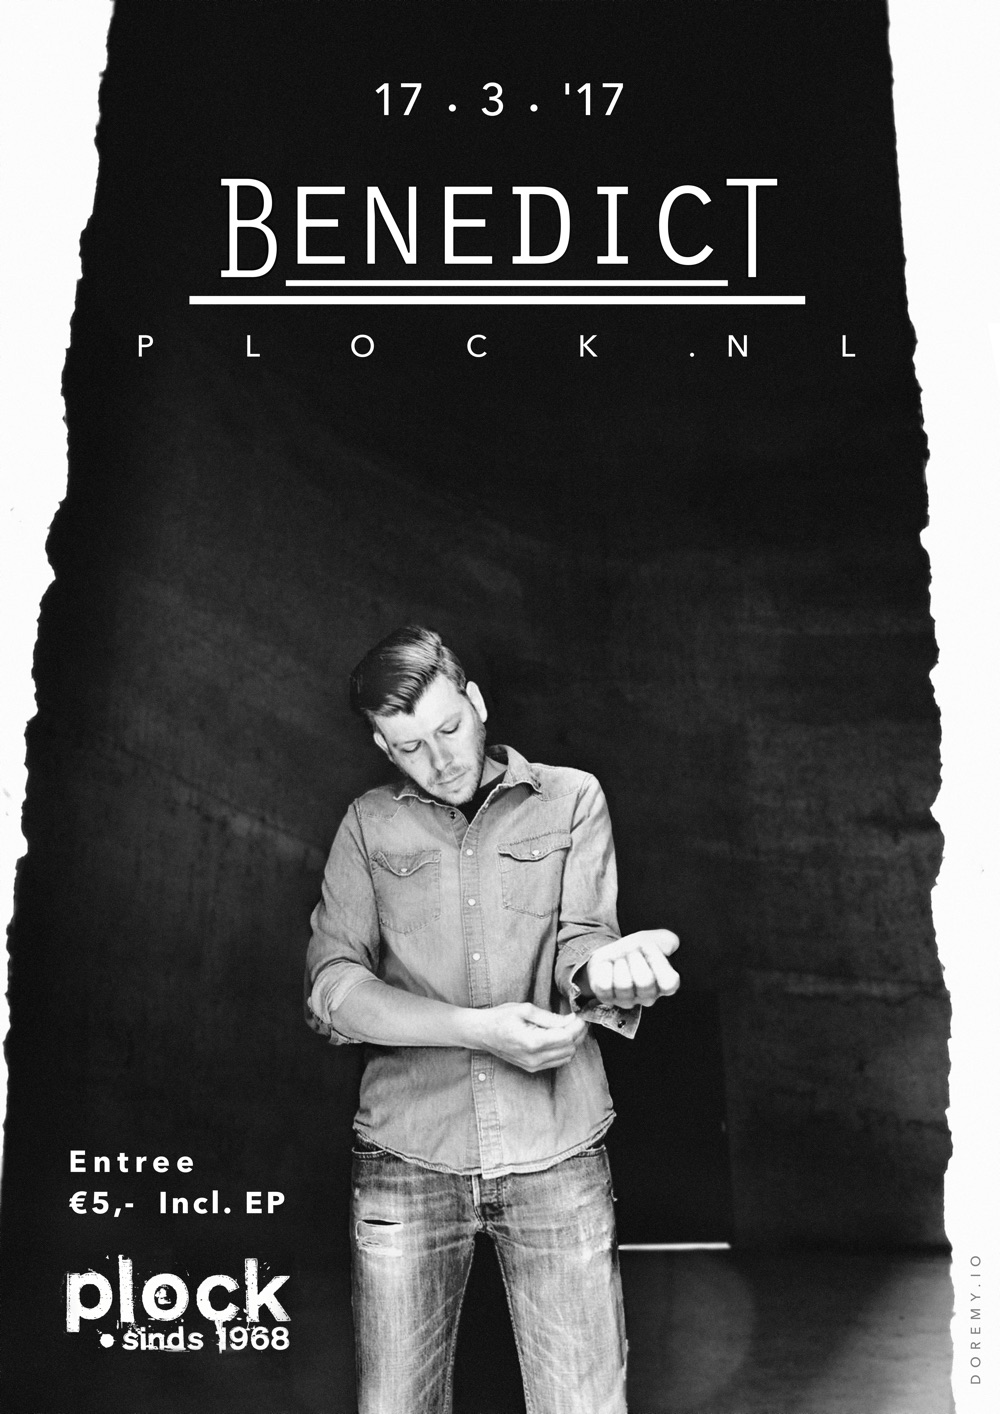 Benedict 17-3-'17